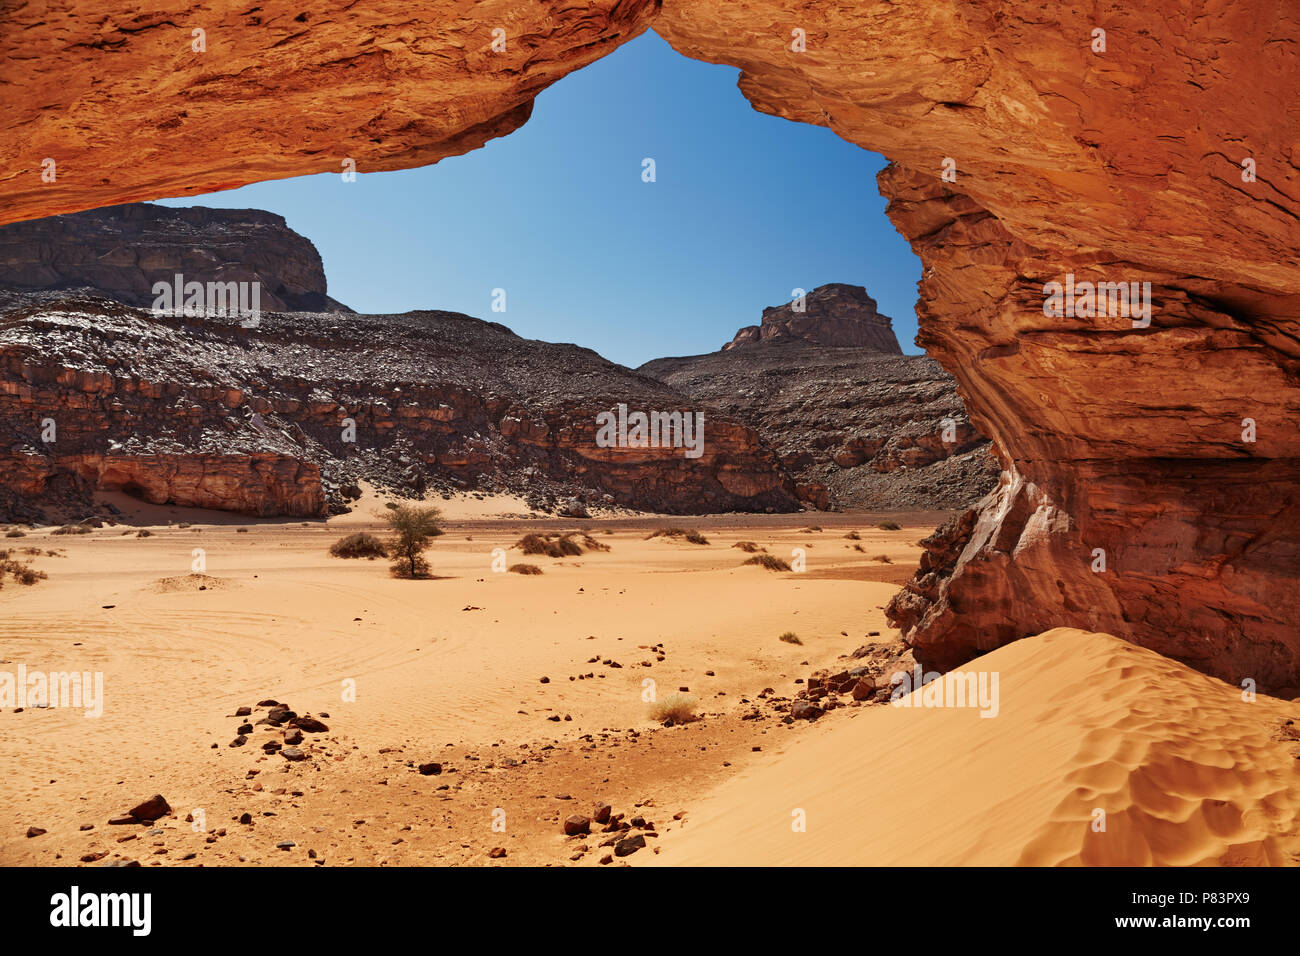 Dunes de sable et rochers, désert du Sahara, l'Algérie Banque D'Images